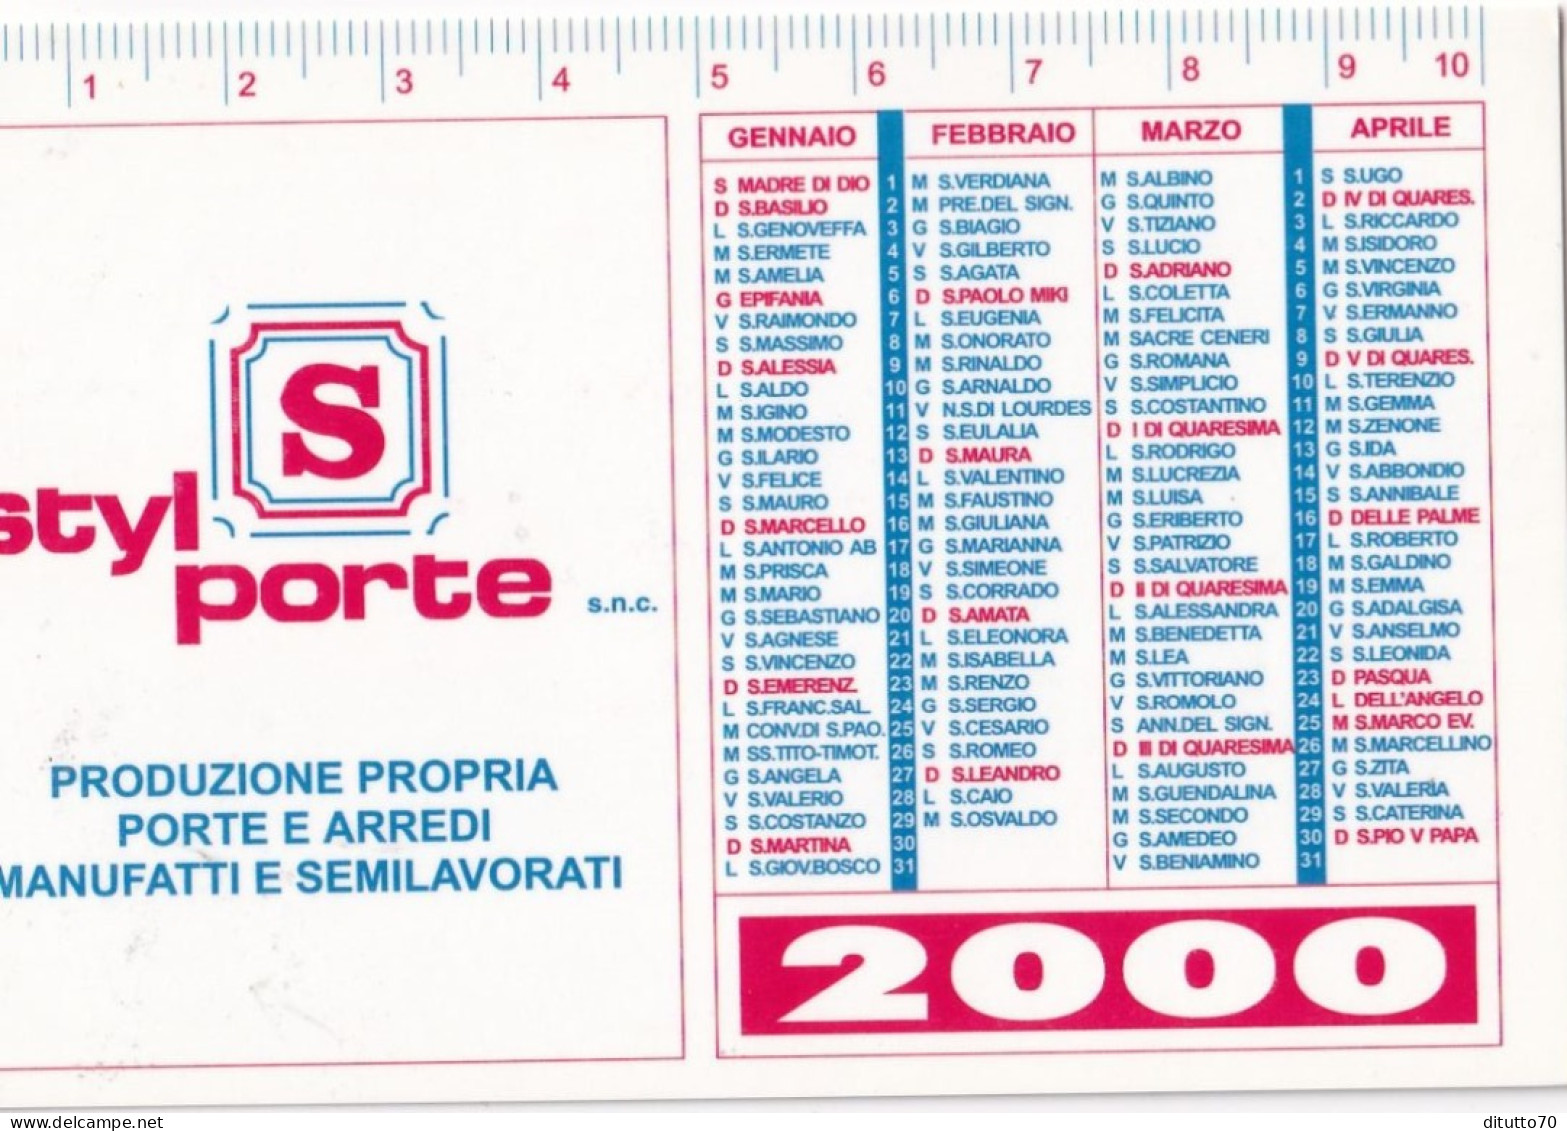 Calendarietto - Styl Porte - Rivalta - Torino - Anno 2000 - Petit Format : 1991-00